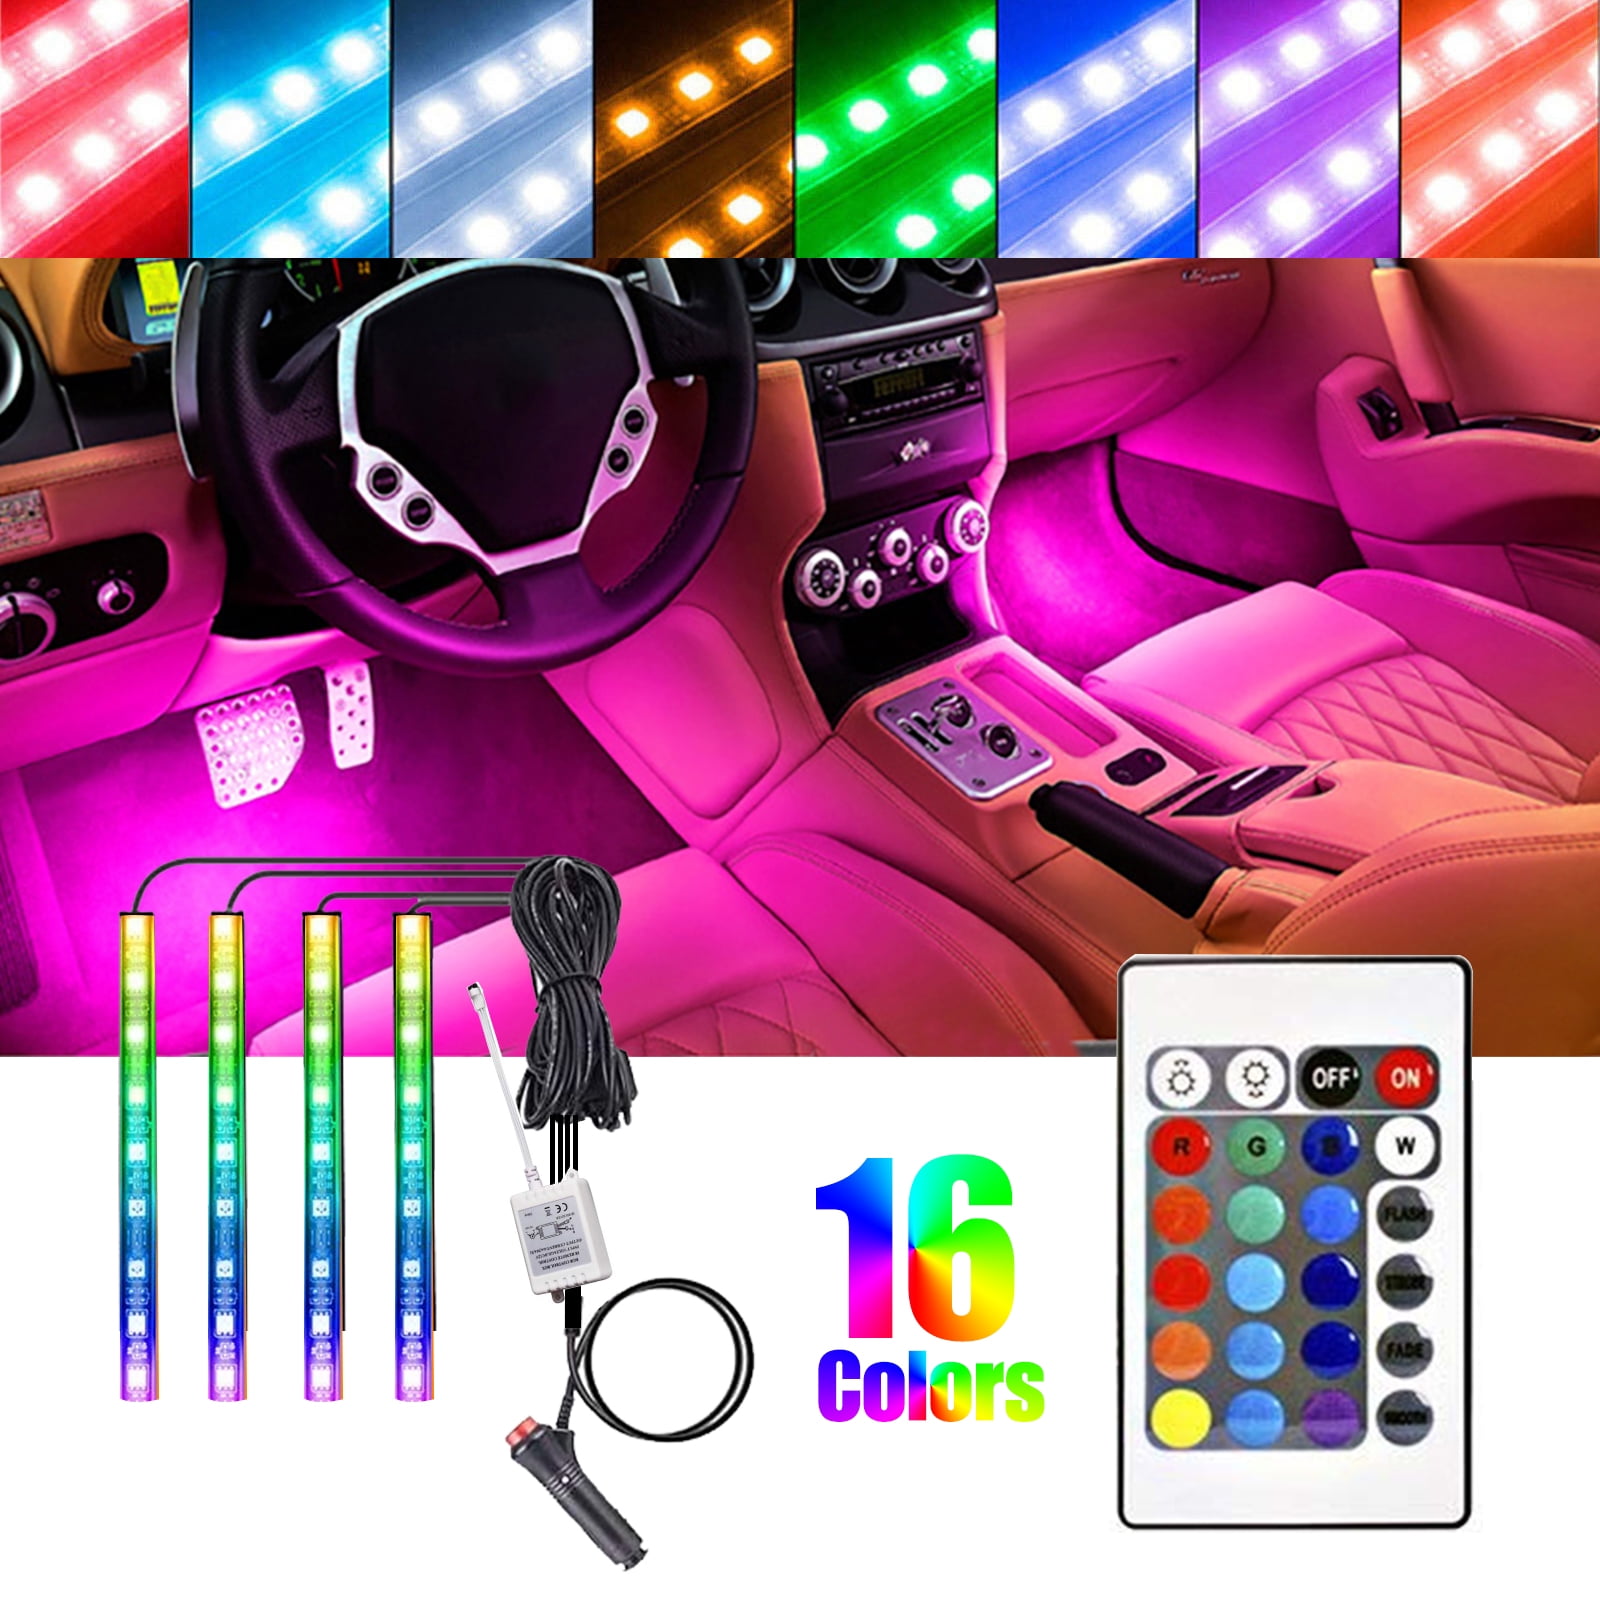 4pcs Mini USB LED RGB Light for Car,USB LED Car Interior Atmosphere Lamp,8 Colors Change,Adjustable Brightness 